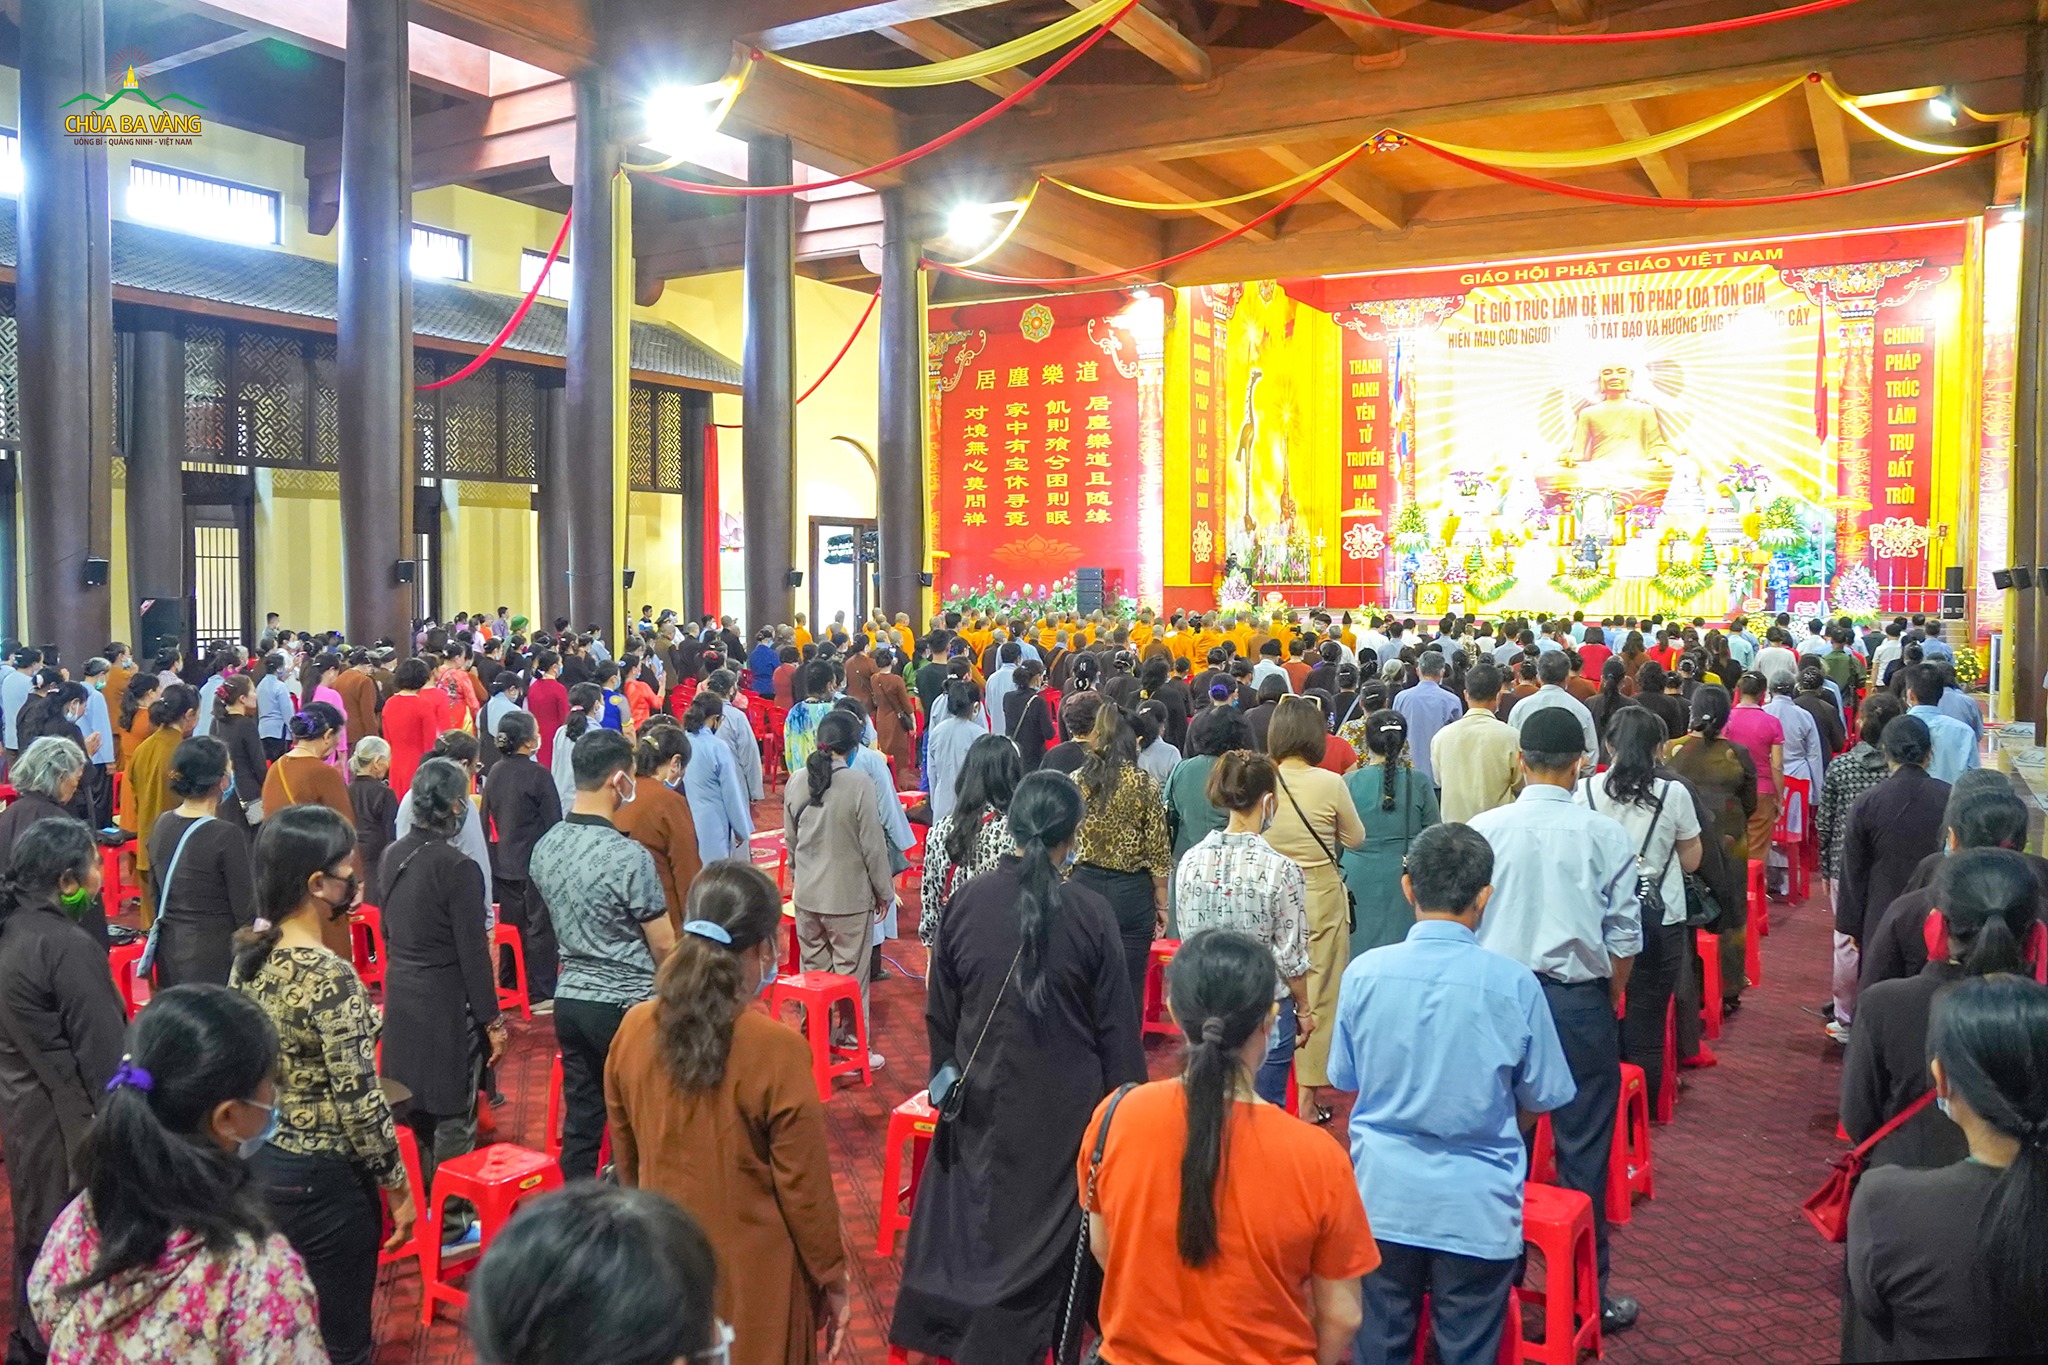   Đông đảo nhân dân, Phật tử đã đến tham dự buổi lễ.  